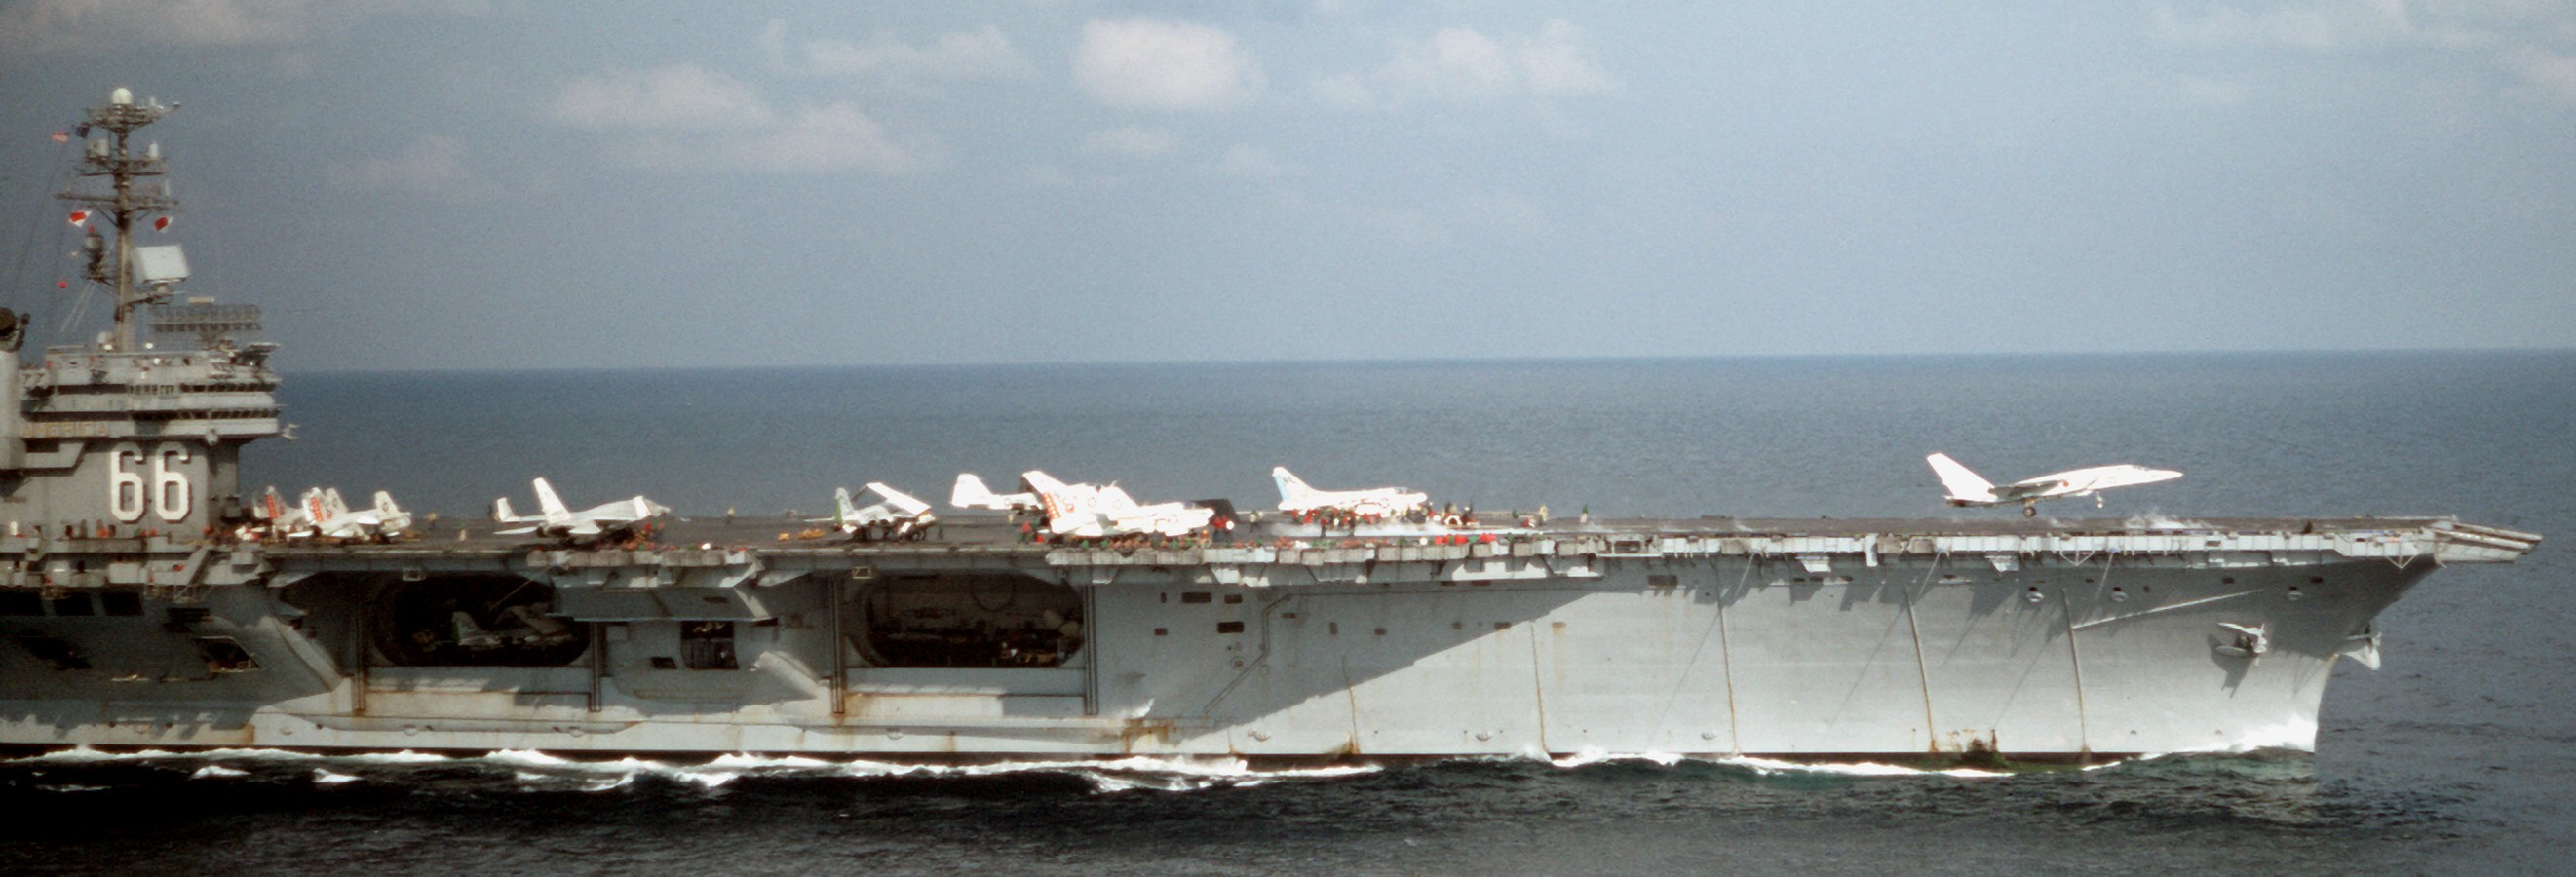 cv-66 uss america kitty hawk class aircraft carrier air wing cvw-6 us navy tonkin gulf vietnam 07